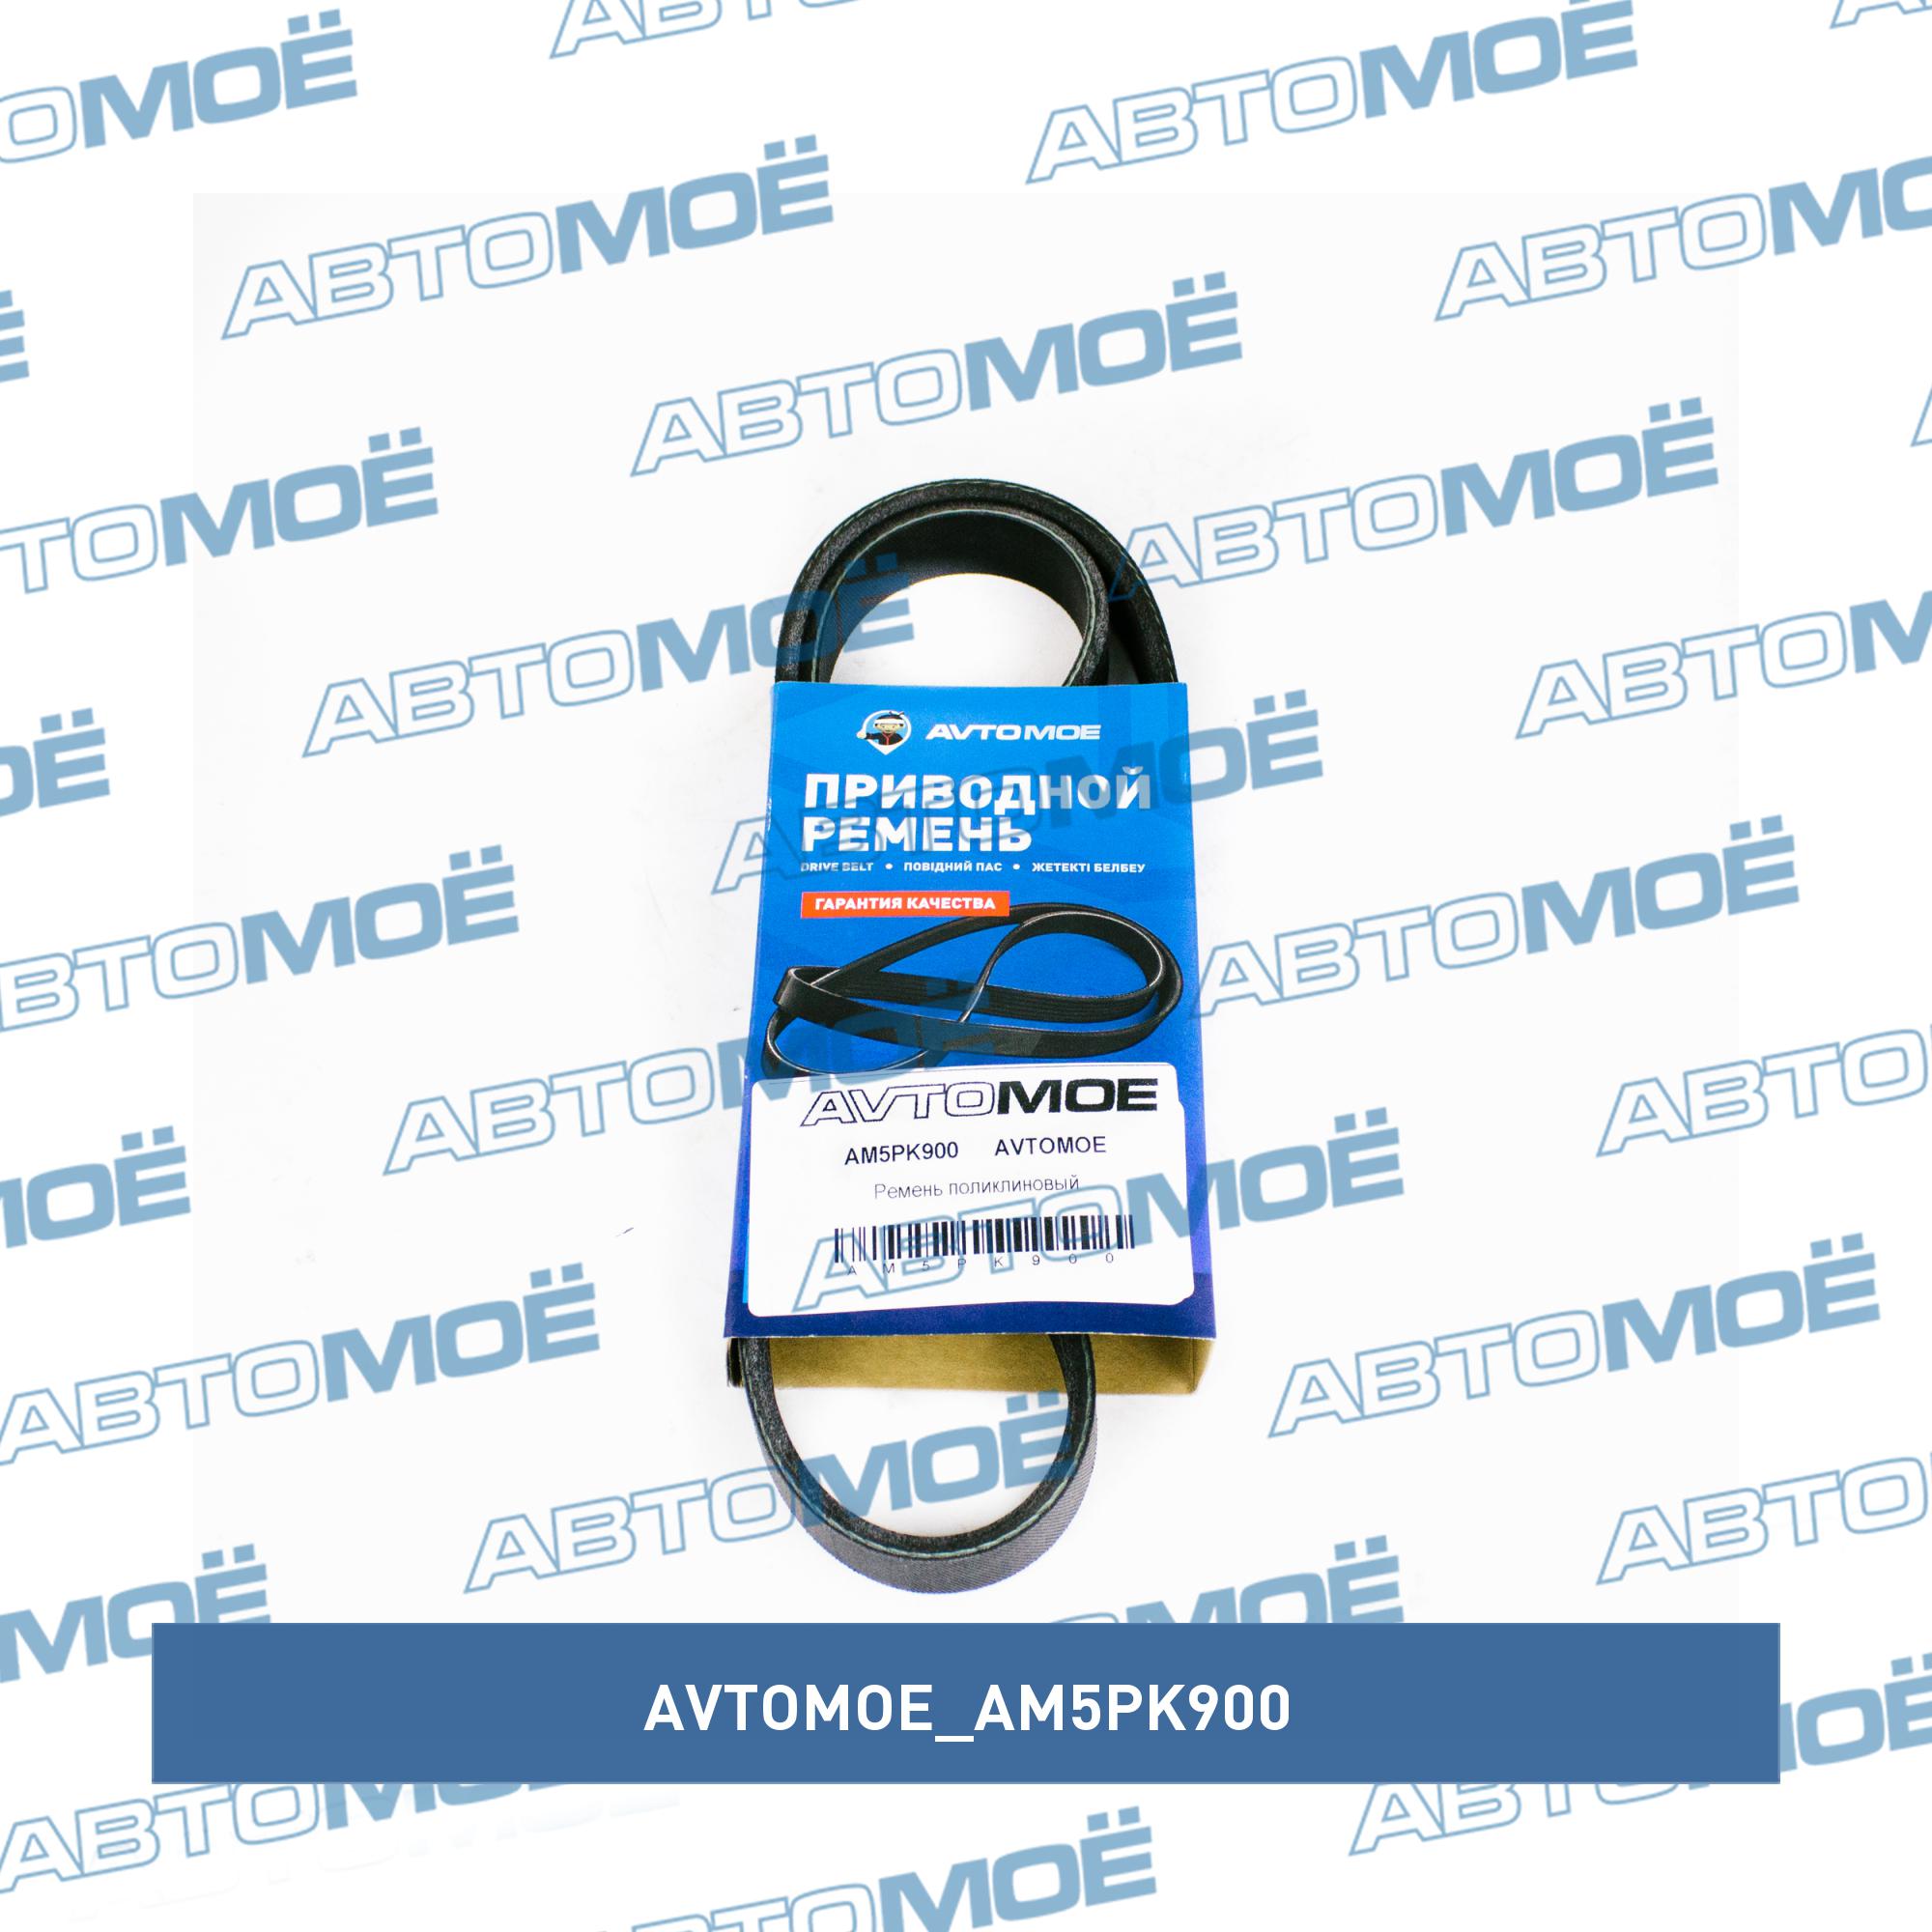 Ремень поликлиновый AVTOMOE AM5PK900